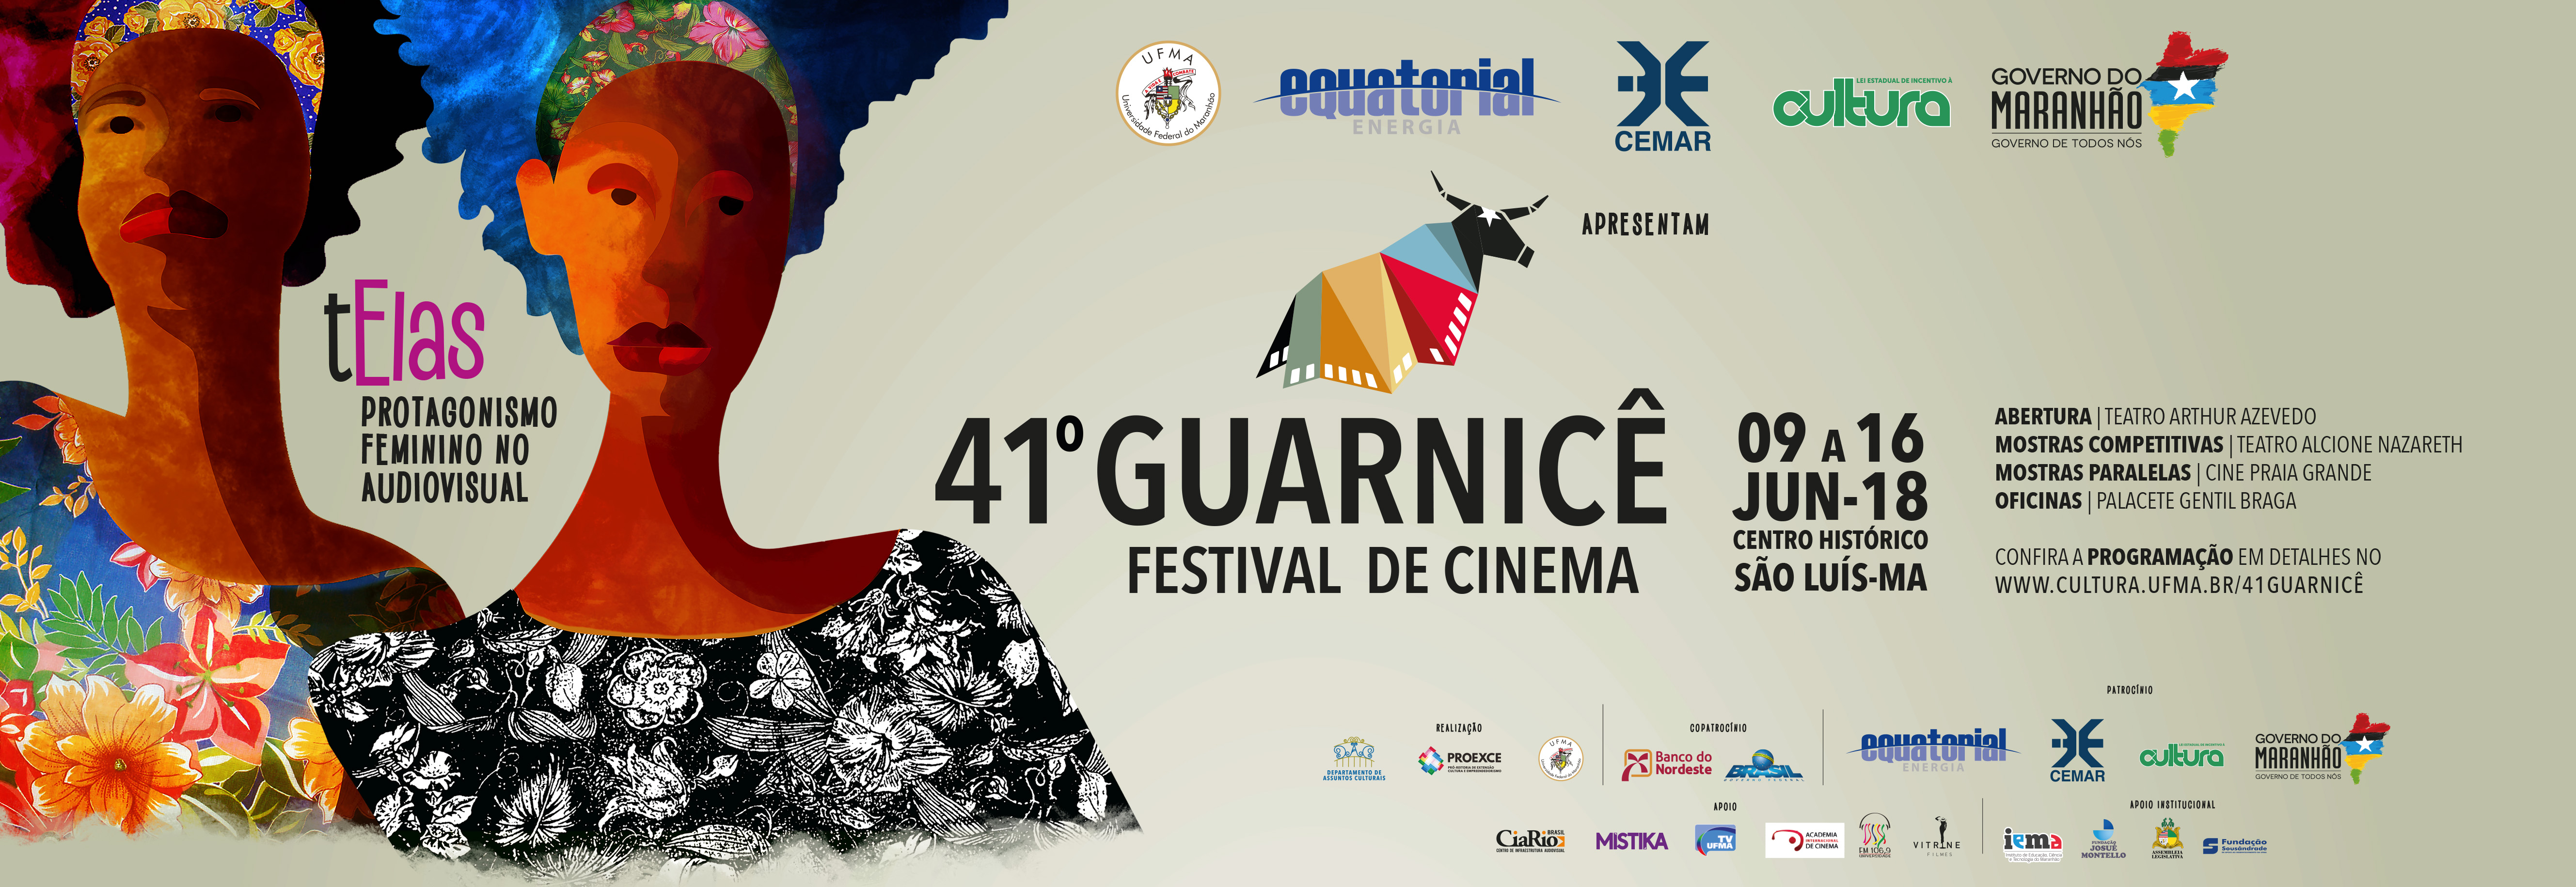 Pelo segundo ano consecutivo AIC participa do Festival de Cinema GUARNICÊ